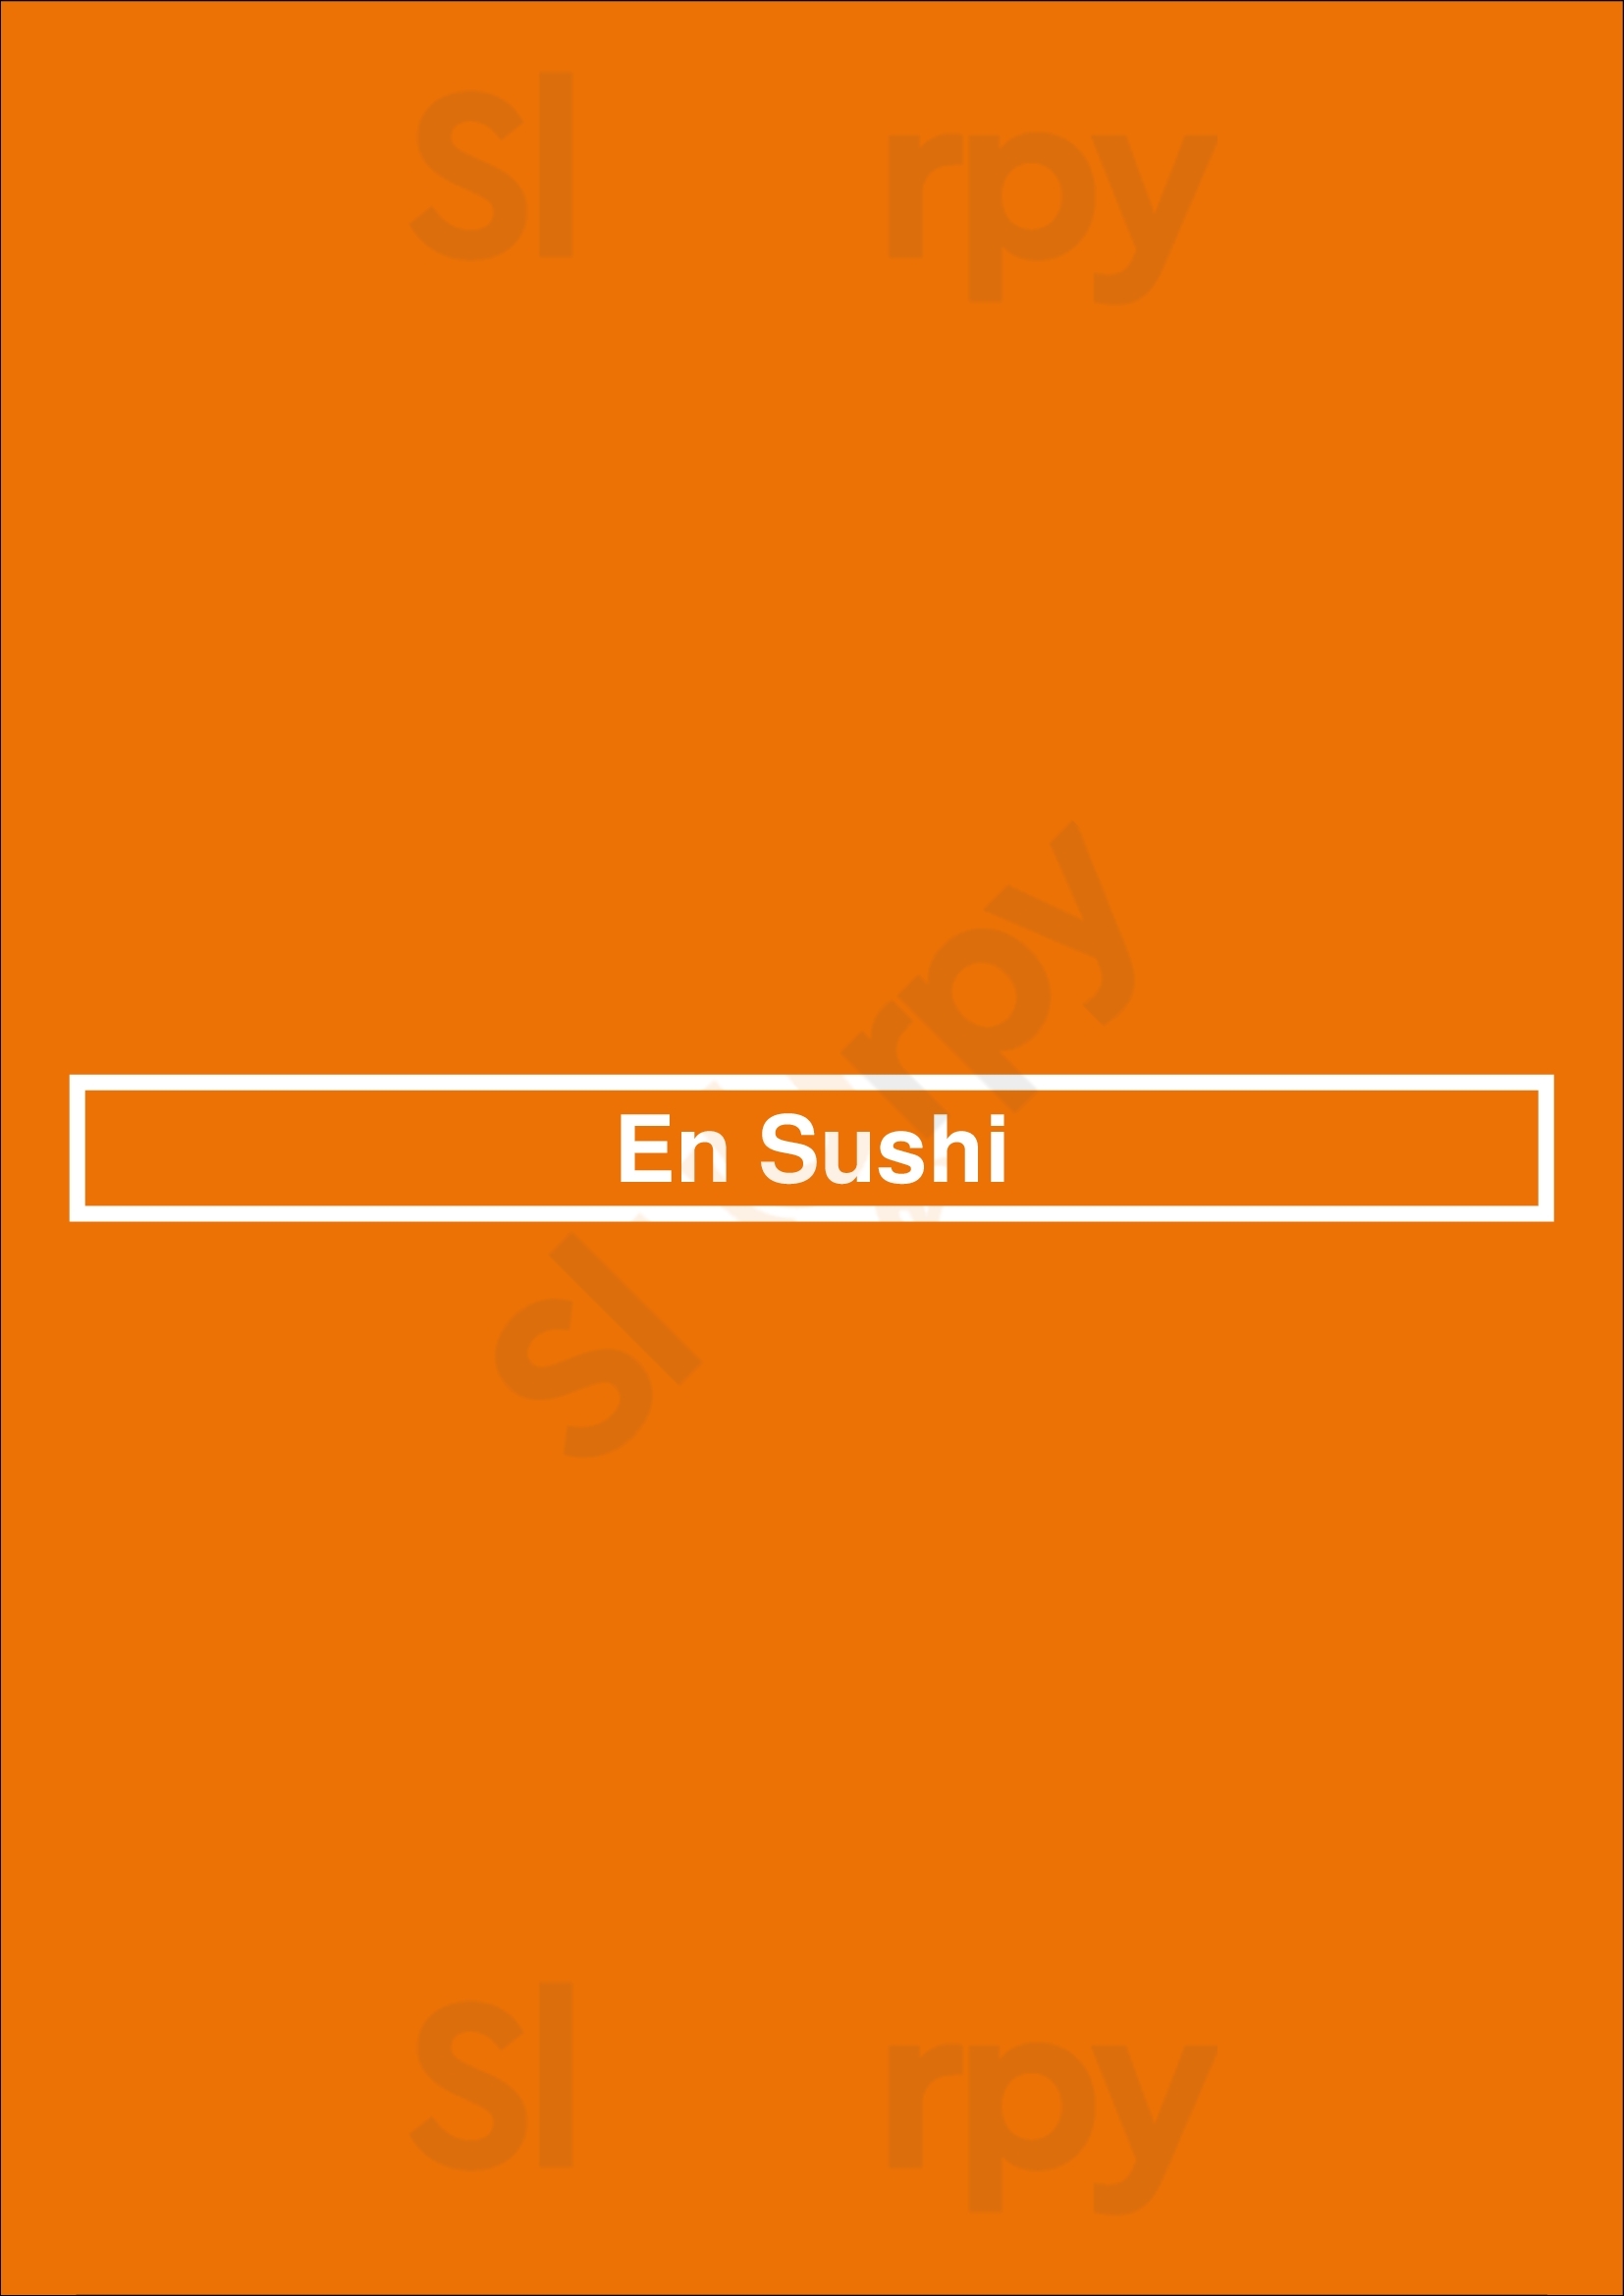 En Sushi Los Angeles Menu - 1